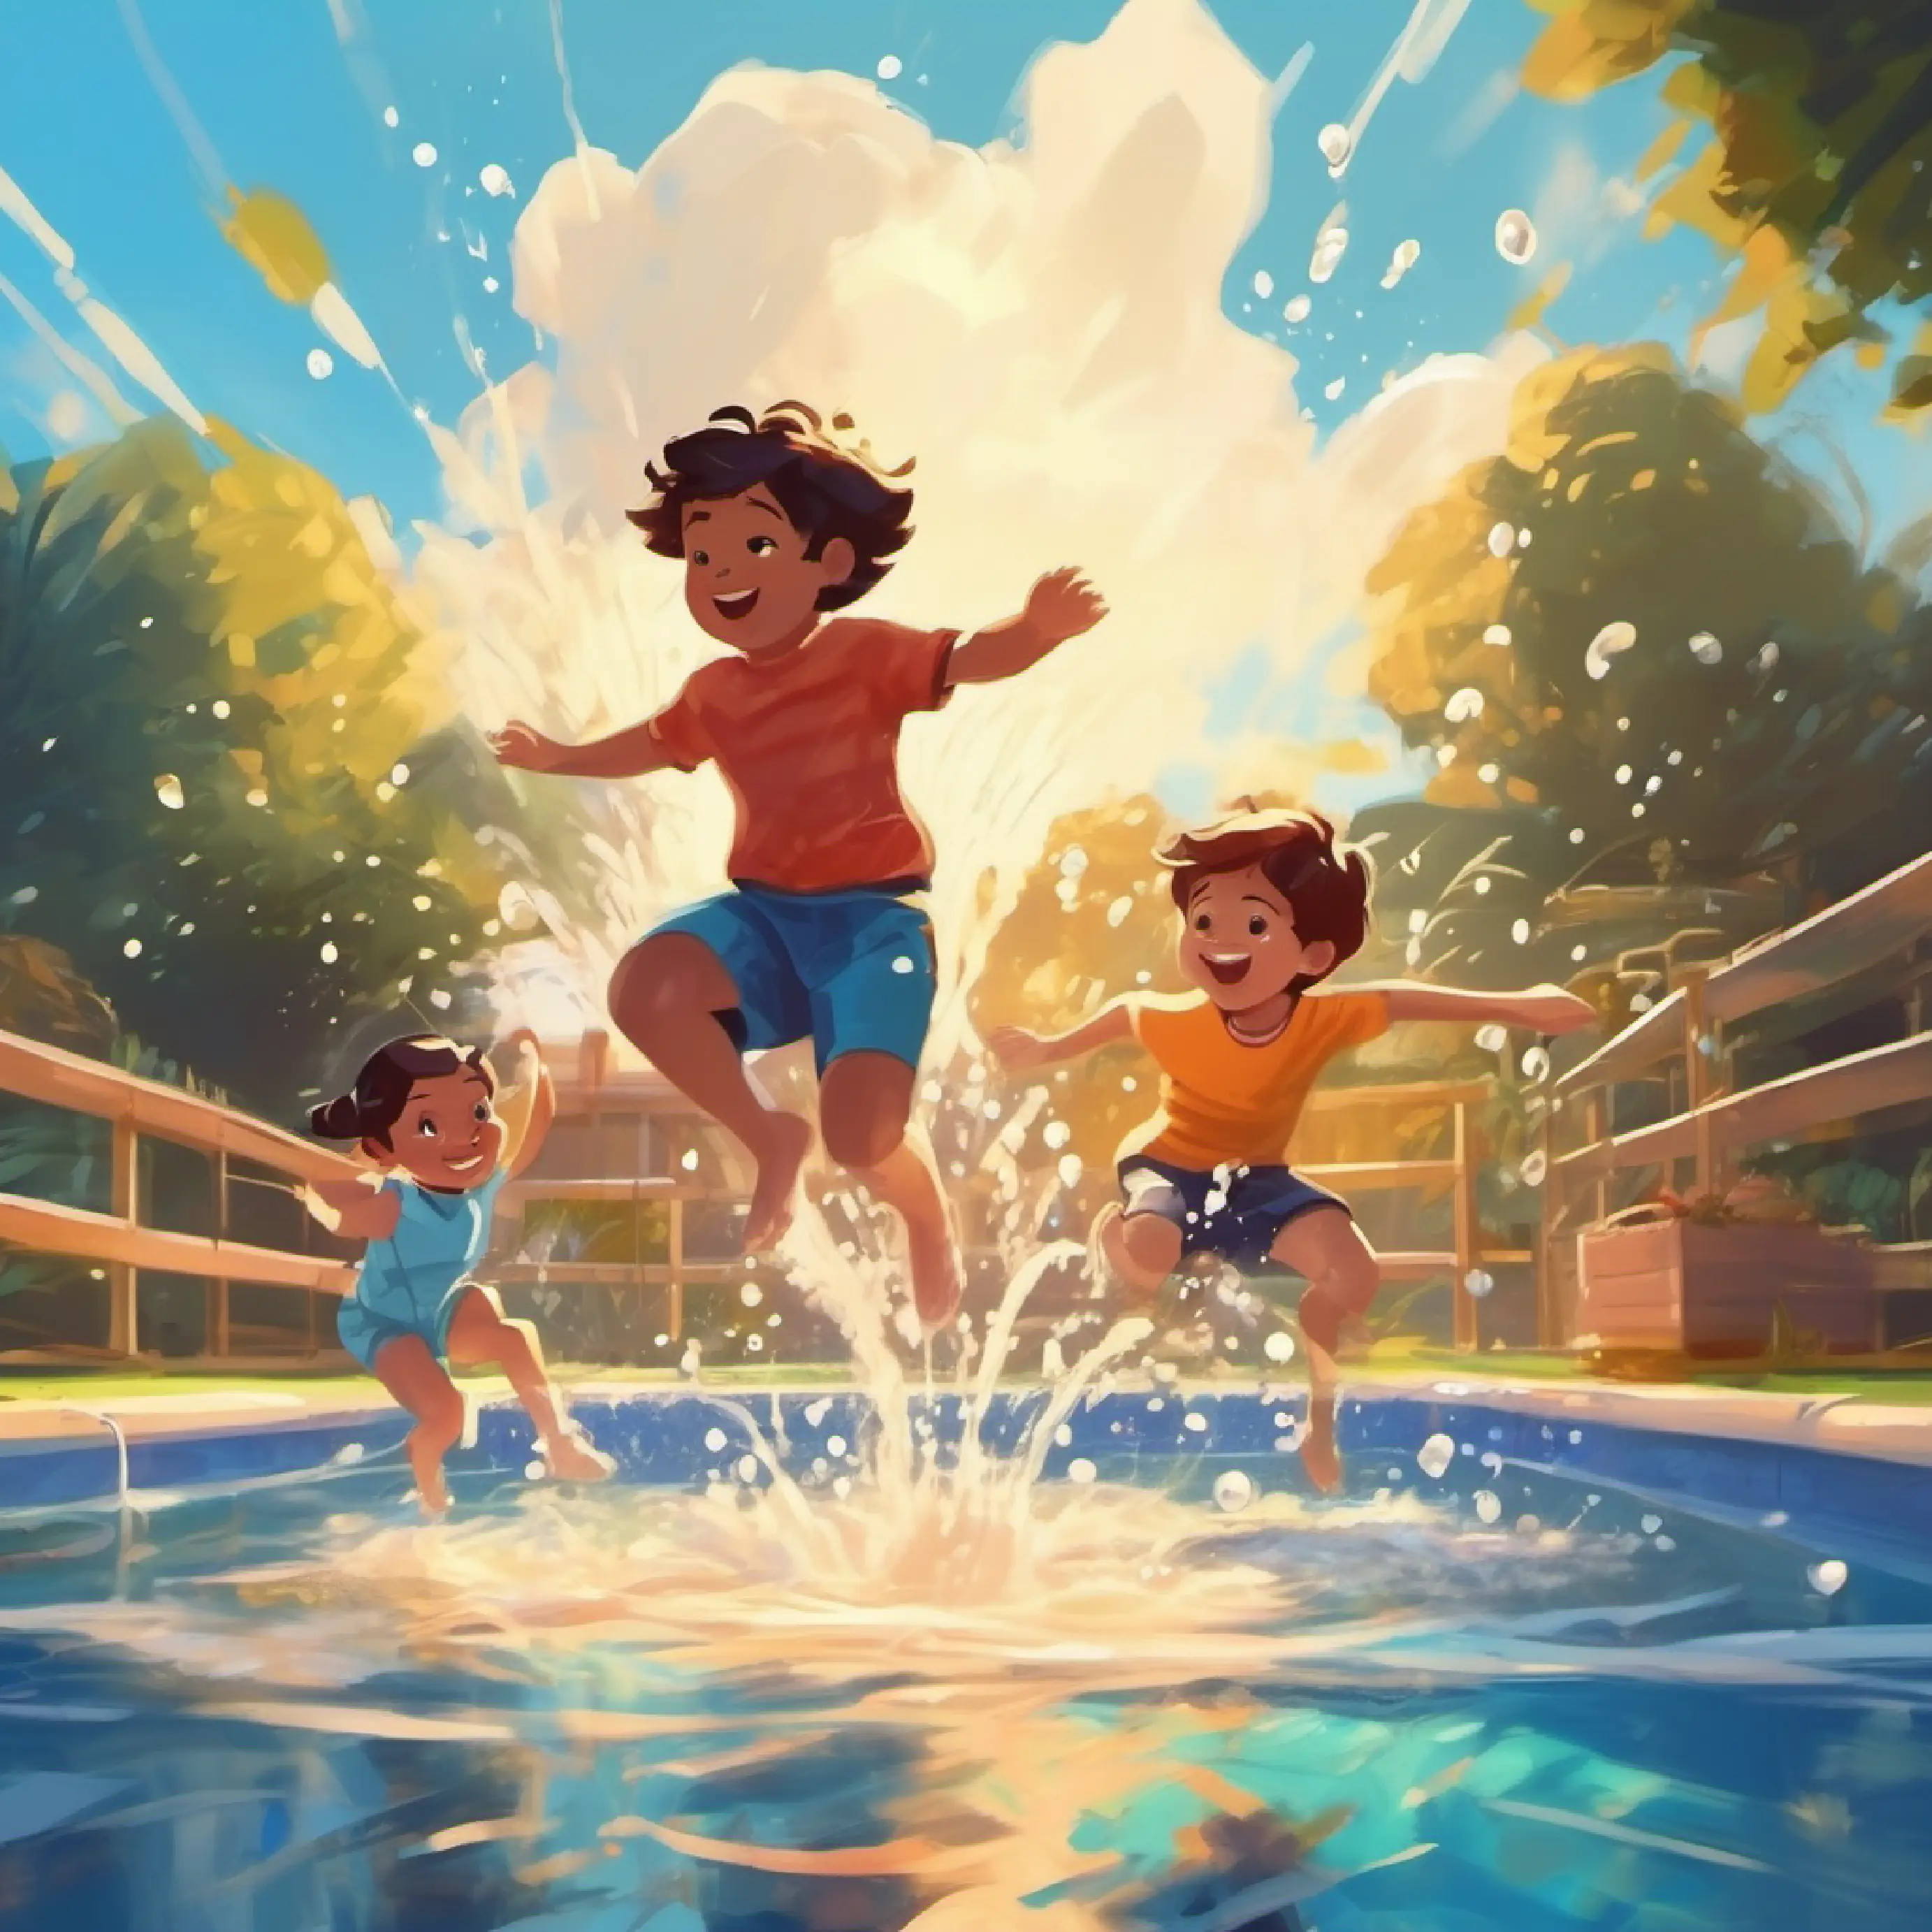 Kids jumping into the pool, splashing water.